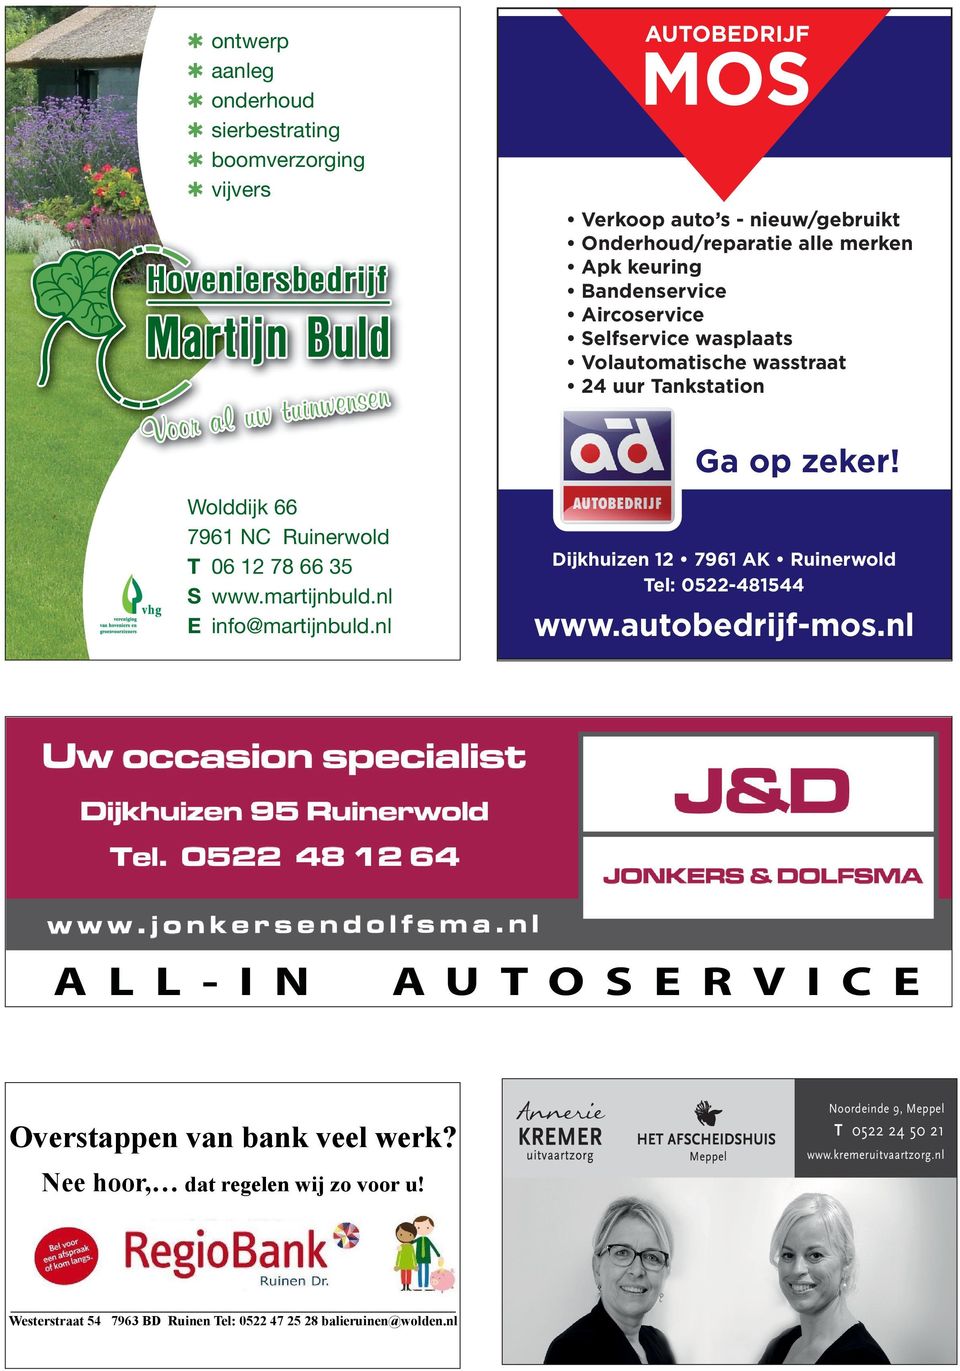 Wolddijk 66 7961 NC Ruinerwold T 06 12 78 66 35 S www.martijnbuld.nl E info@martijnbuld.nl A L L - I N Dijkhuizen 12 7961 AK Ruinerwold Tel: 0522-481544 www.autobedrijf-mos.